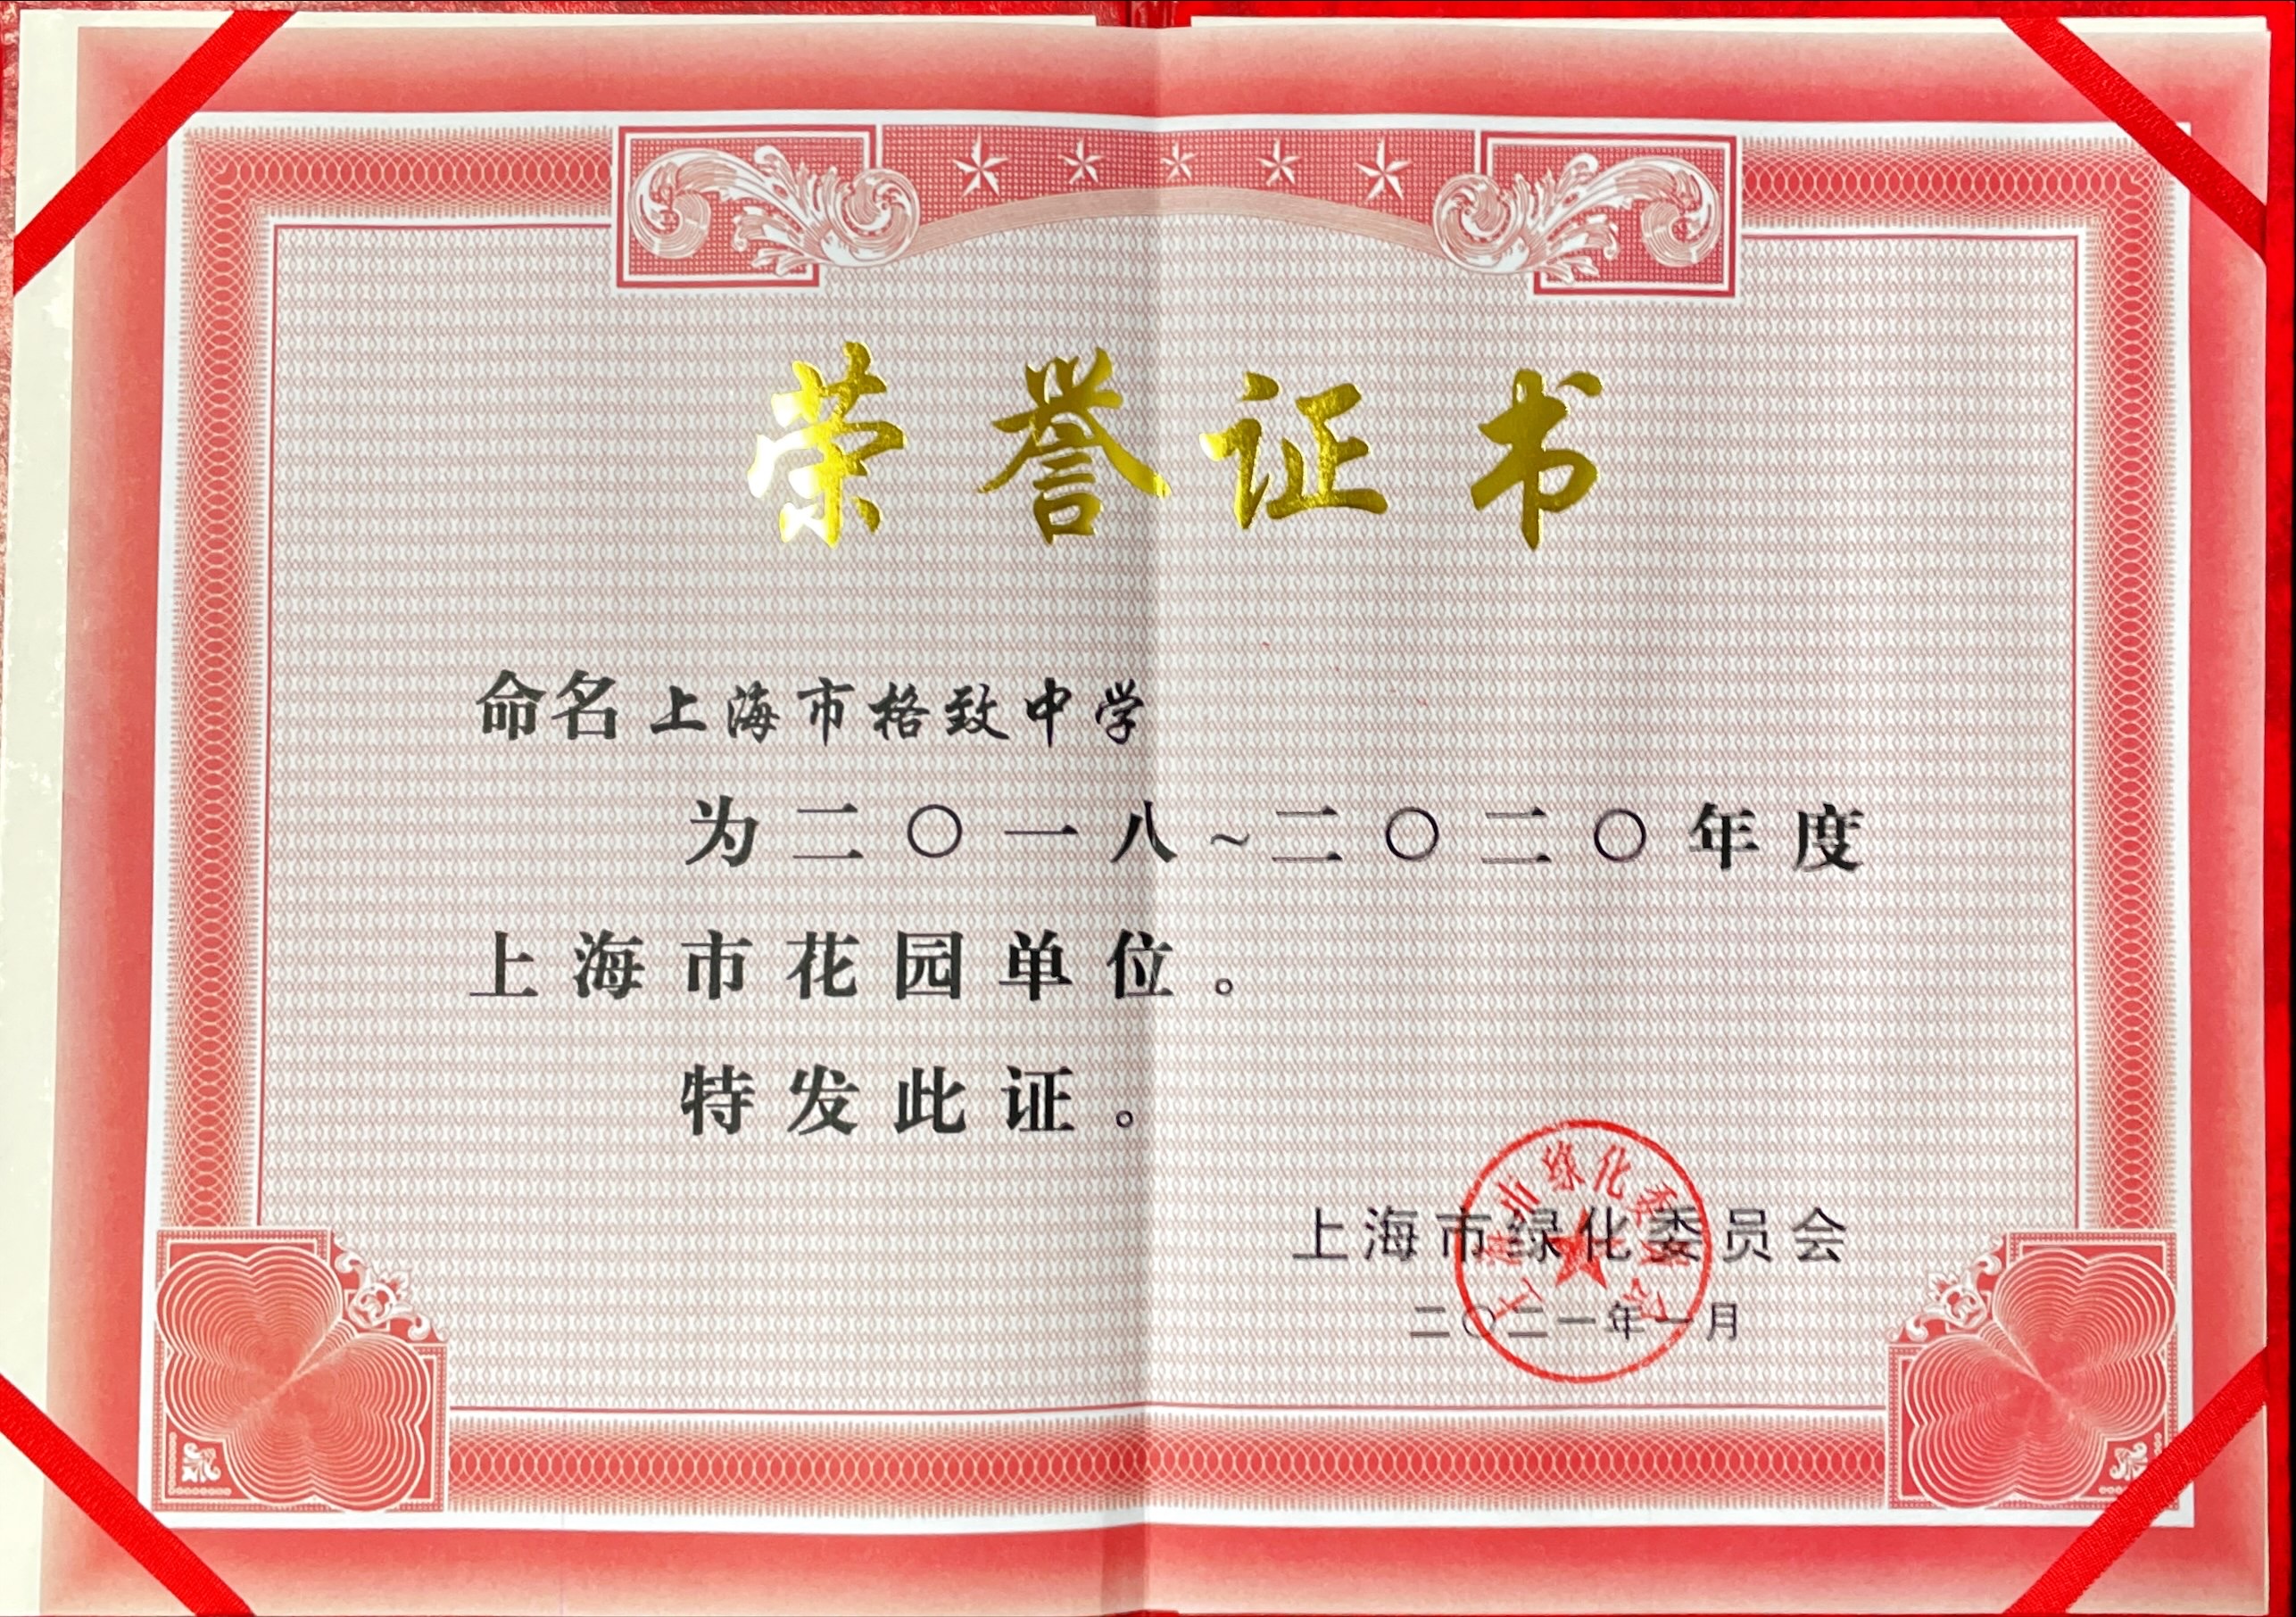 我校被评为“上海市花园单位”